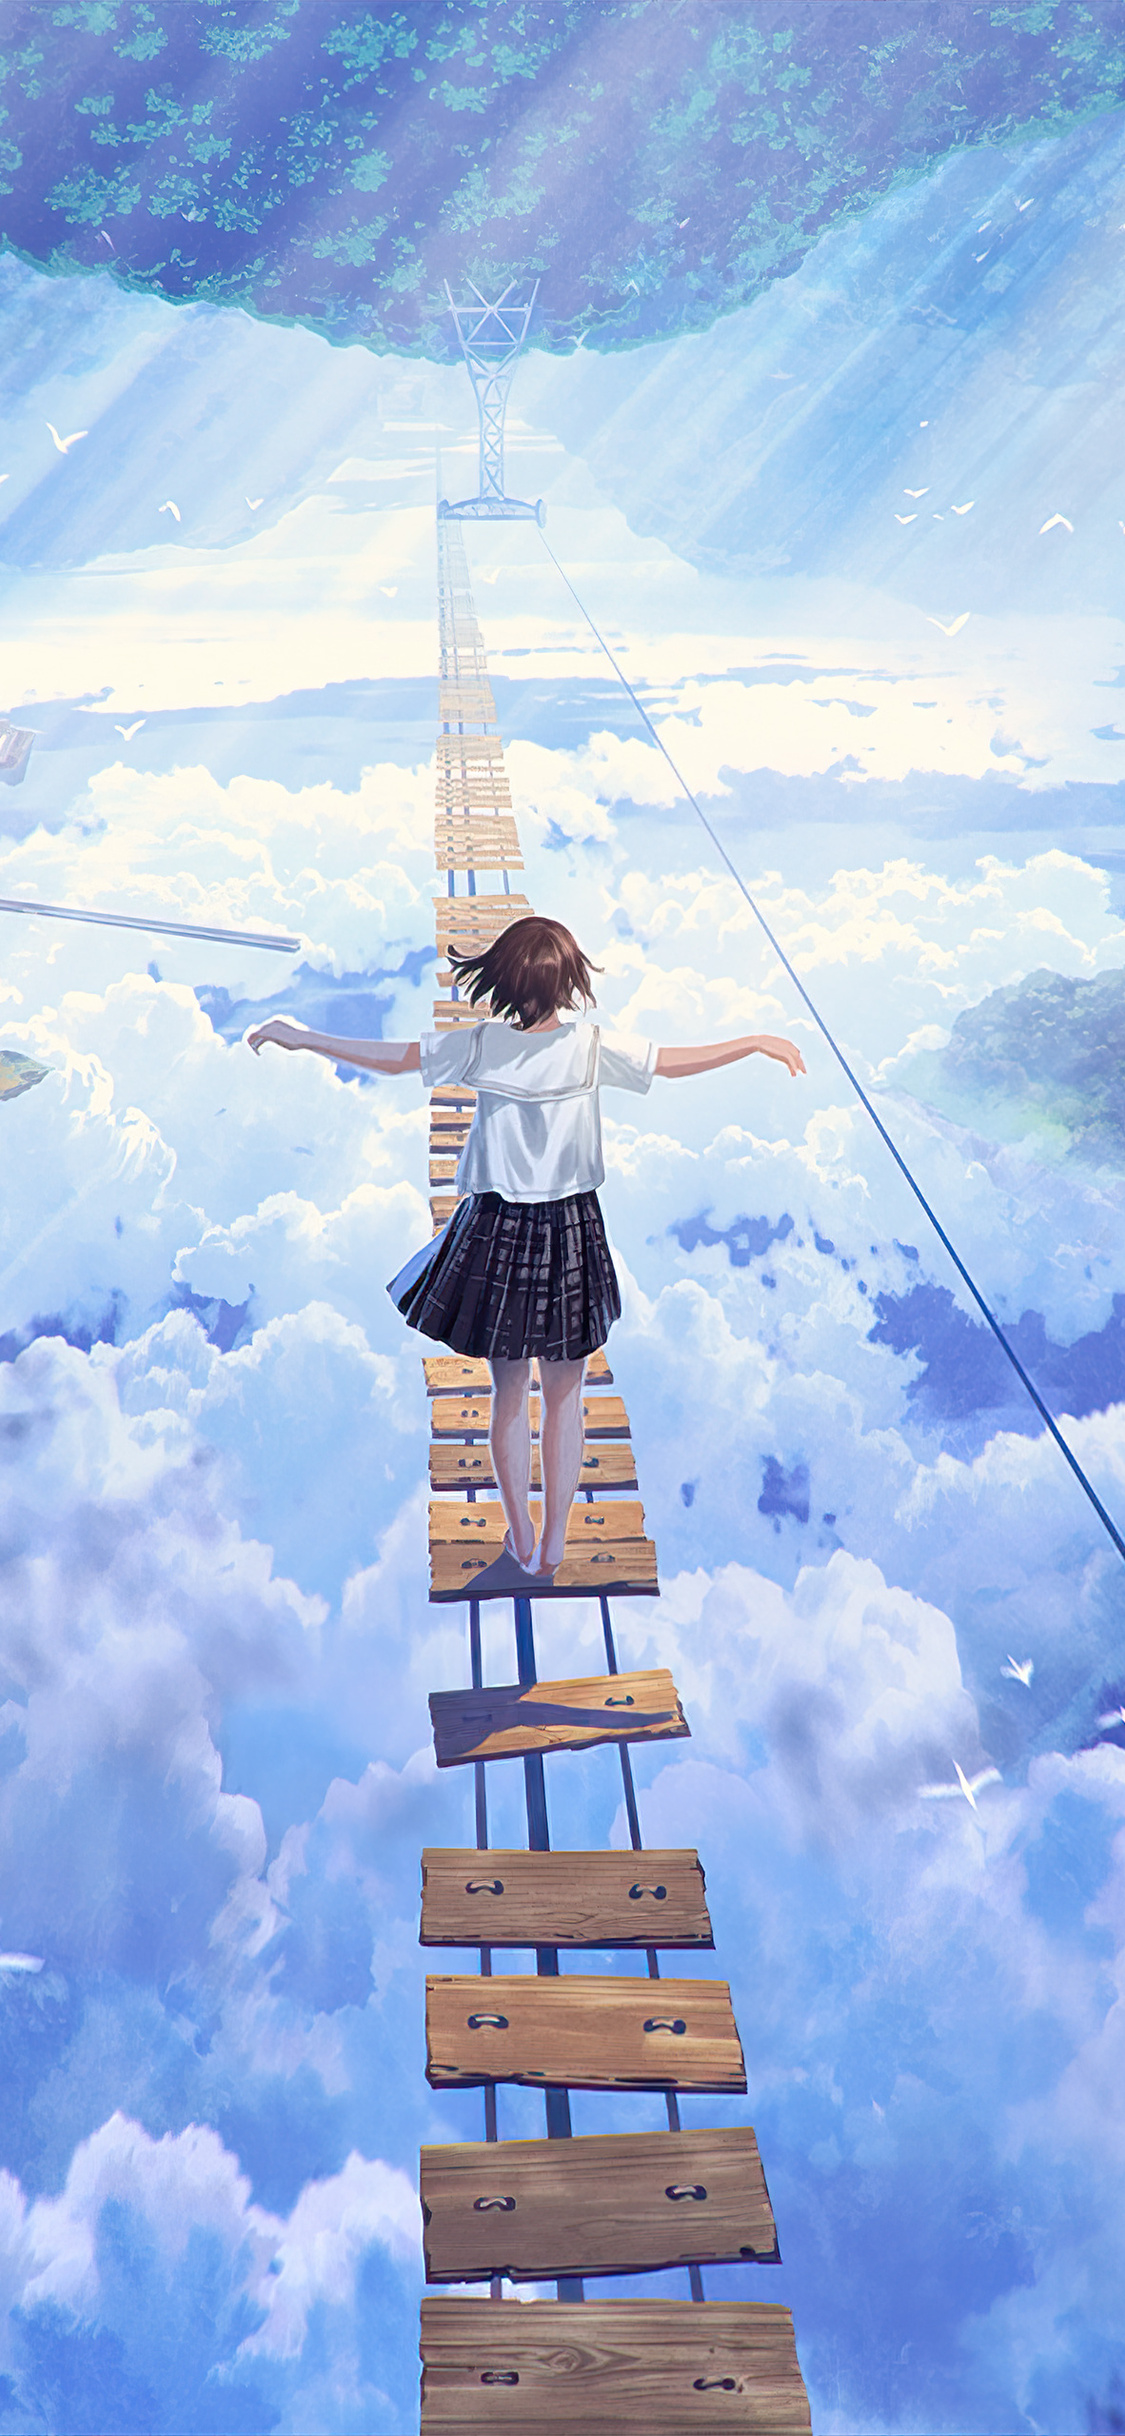 Anime hình ảnh của Mia trên BANGDREAM trong 2020, anime bang dream HD  wallpaper | Pxfuel